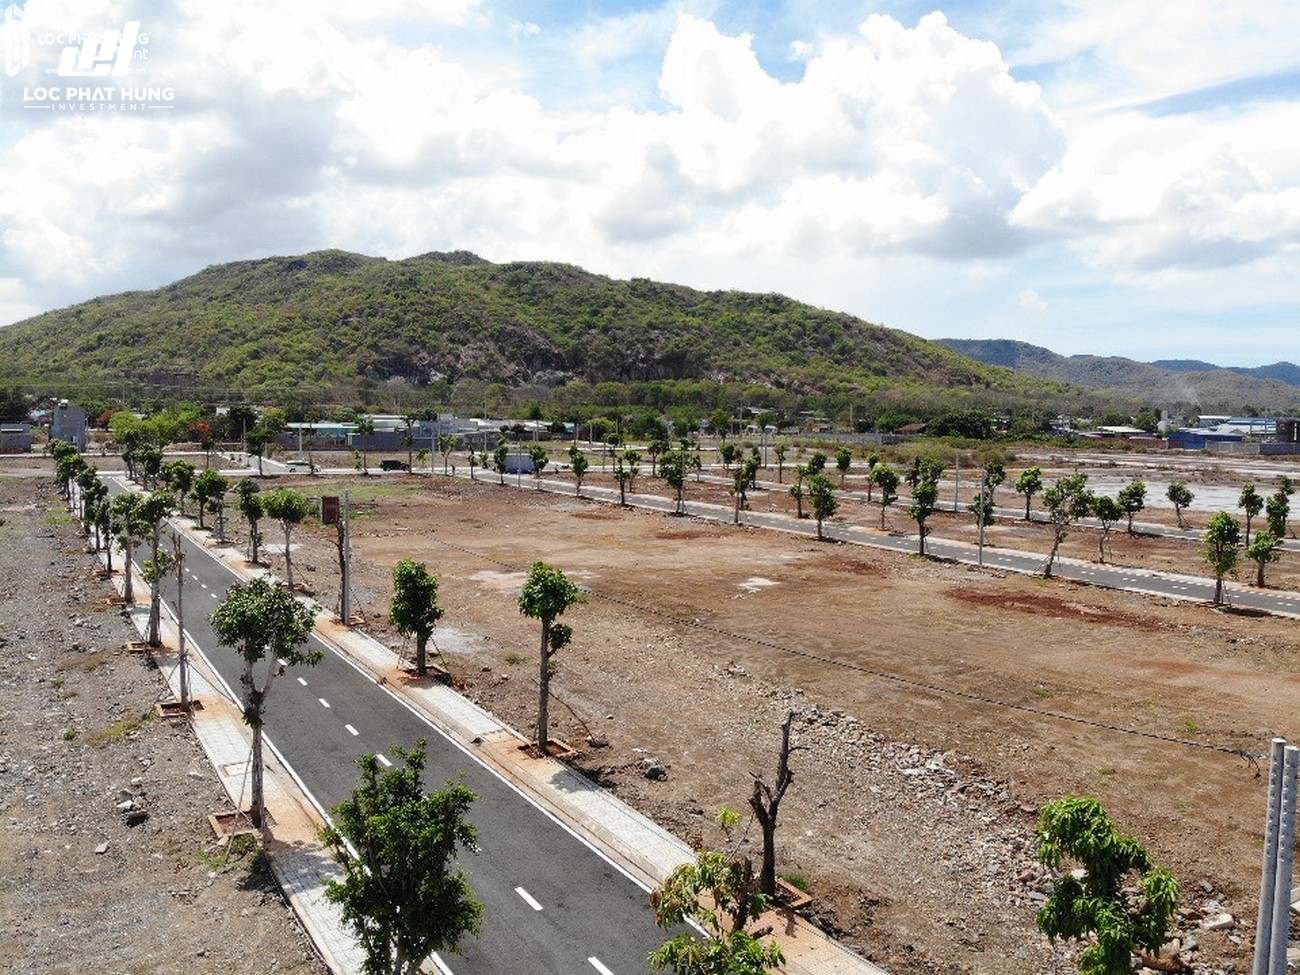 Tiên độ dự án và hình thực tế đất nền Eco Golden River huyện Long Điền Tỉnh Bà Rịa 06/2020